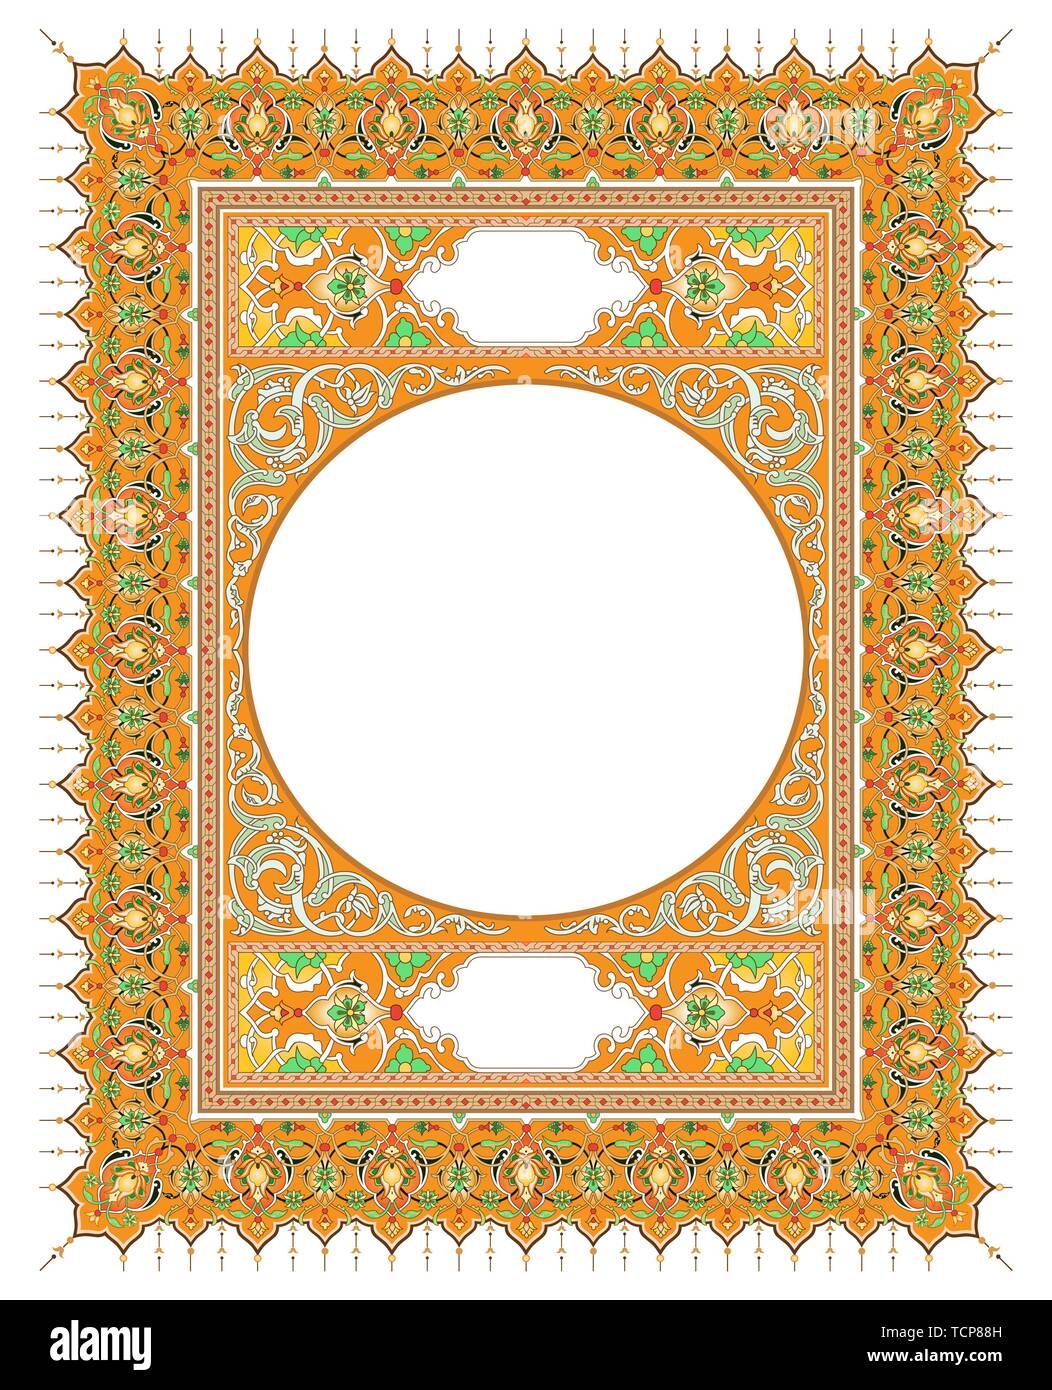 À l'intérieur de couverture de livre, livre de prière islamique Image  Vectorielle Stock - Alamy